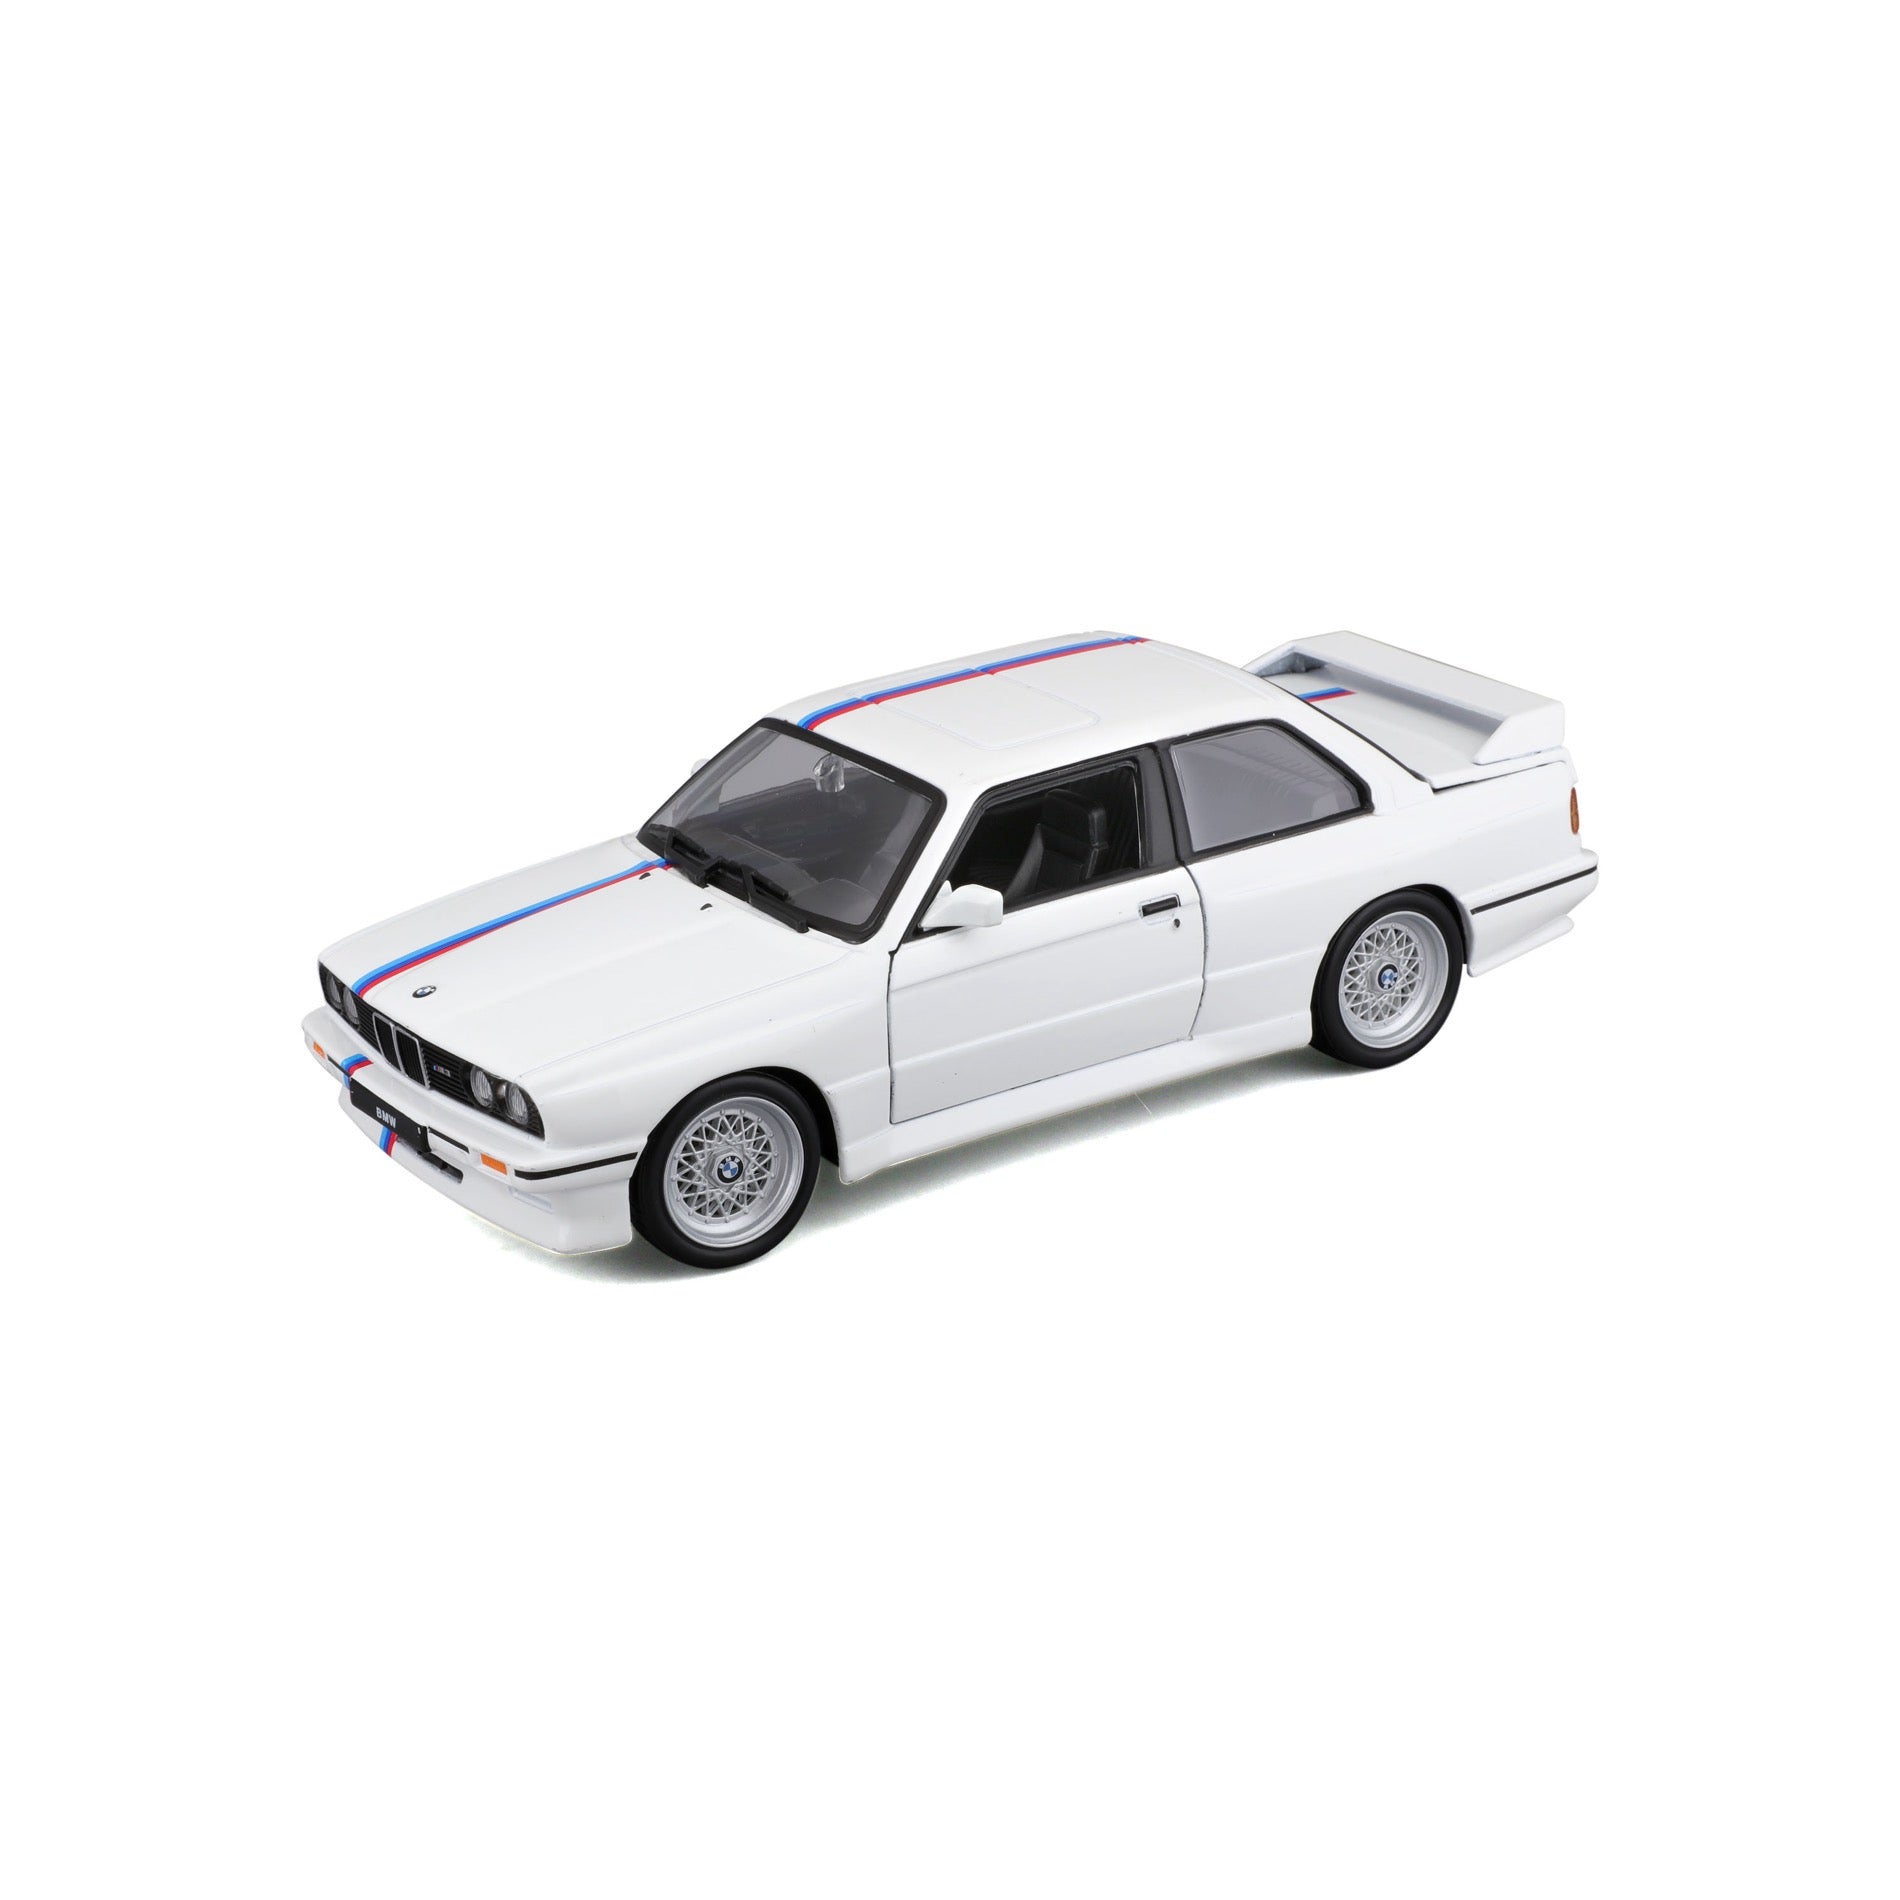 18-21100 WT - Bburago - 1:24 - BMW M3 (E30) 1988 - White w/ stripe